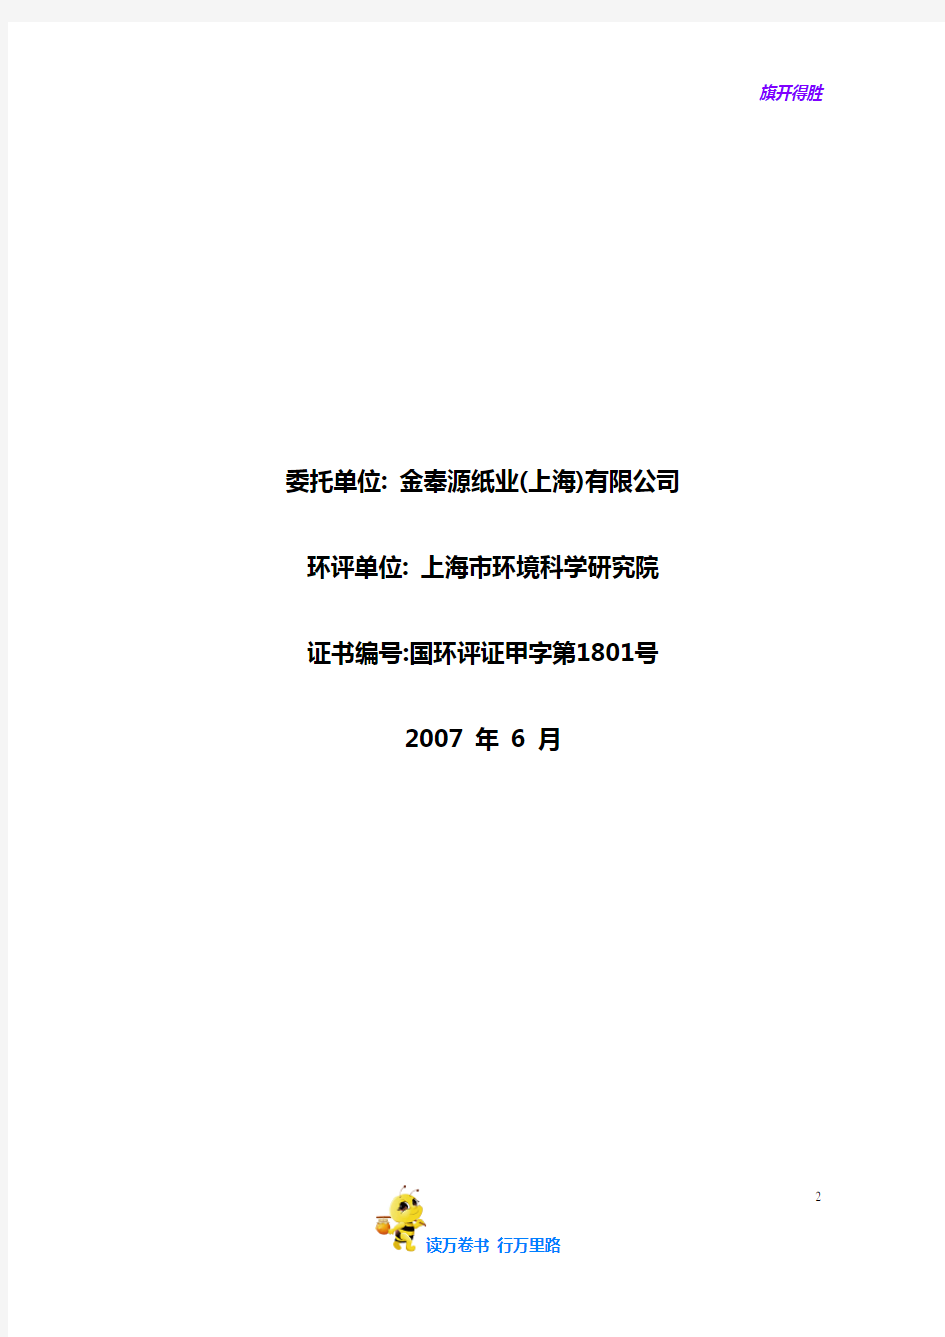 金奉源纸业(上海)有限公司八万吨年淋膜项目环境影响报告书简写本